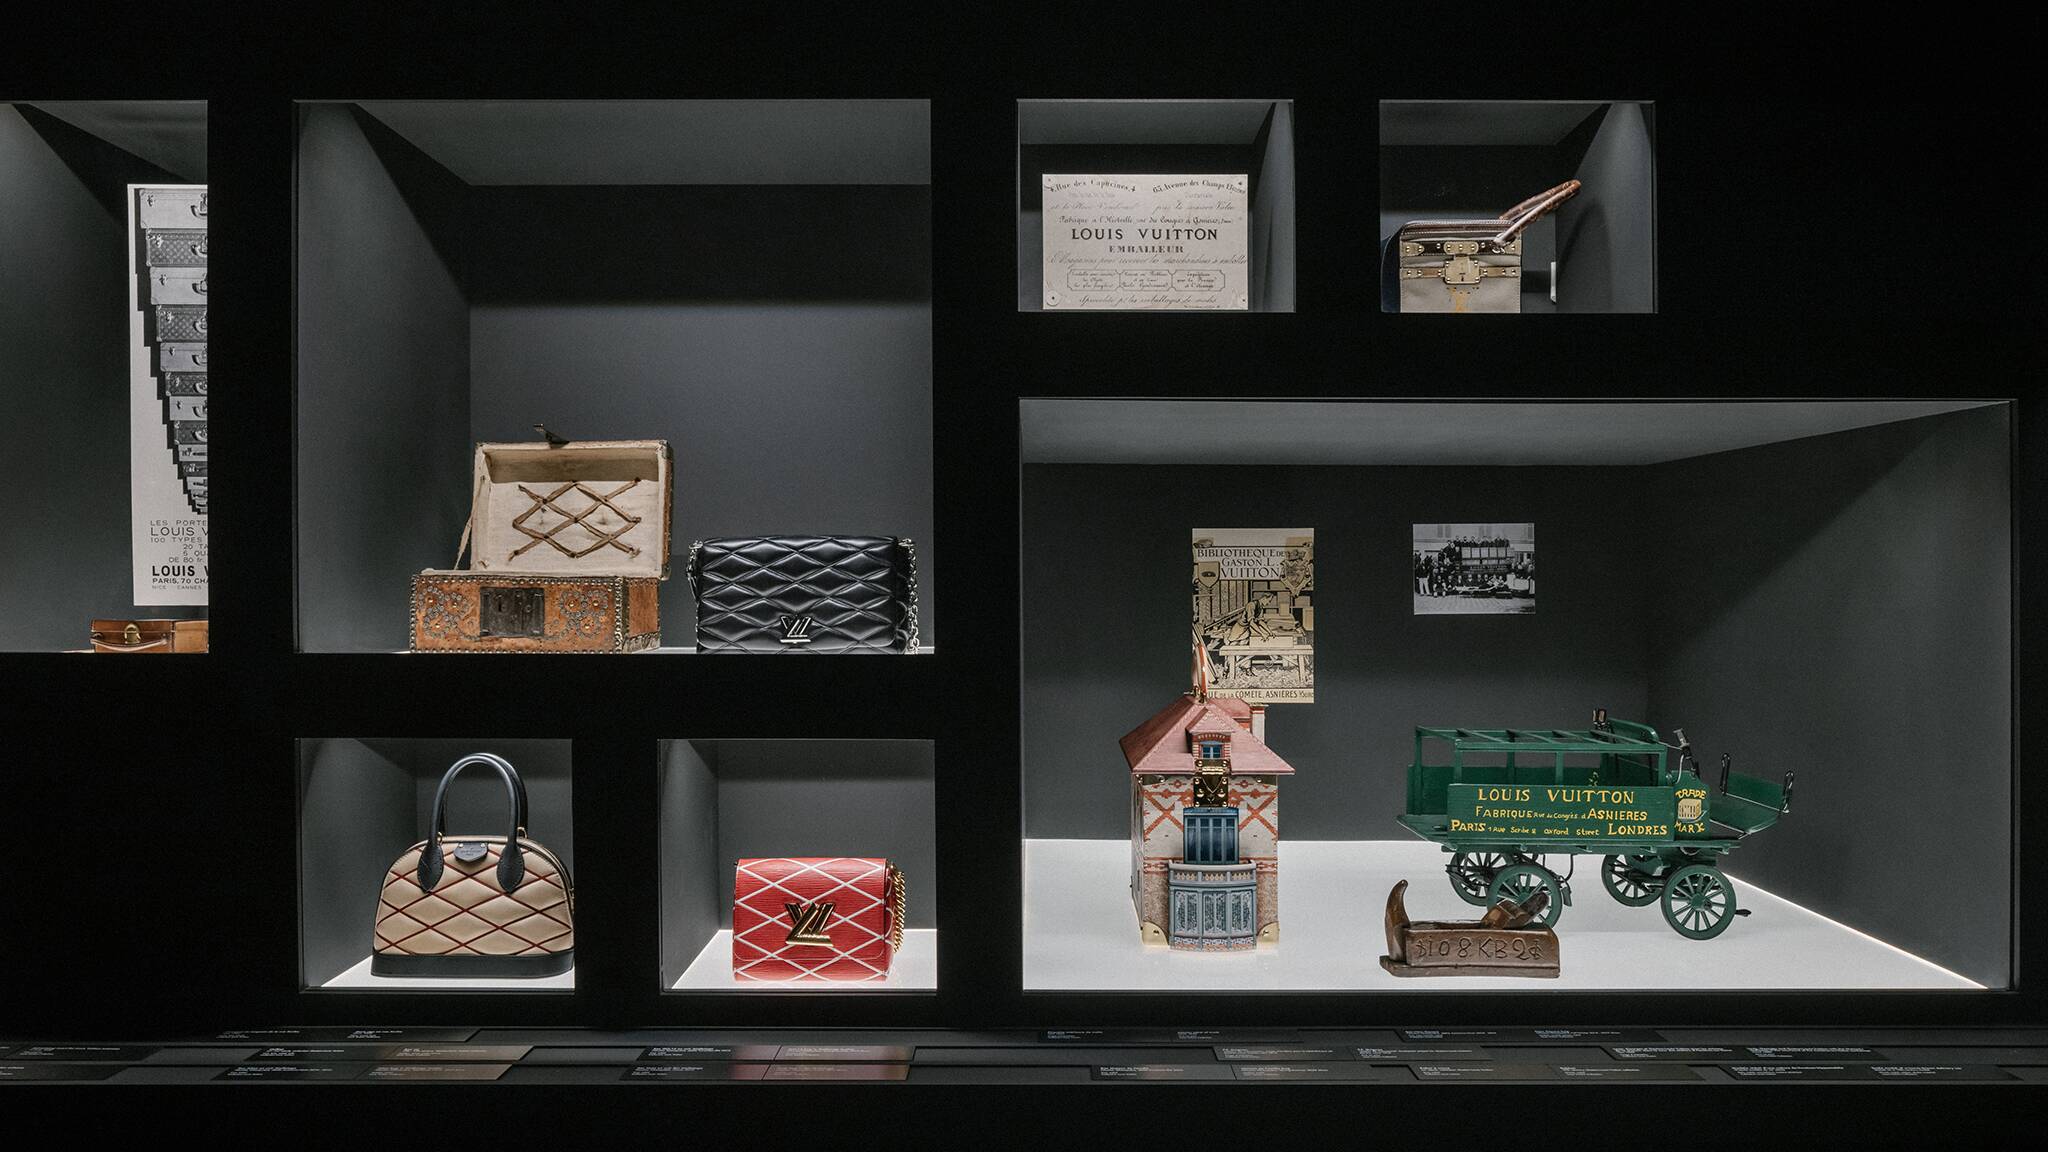 Paris-bise-art : Galerie Louis Vuitton - la maison de famille